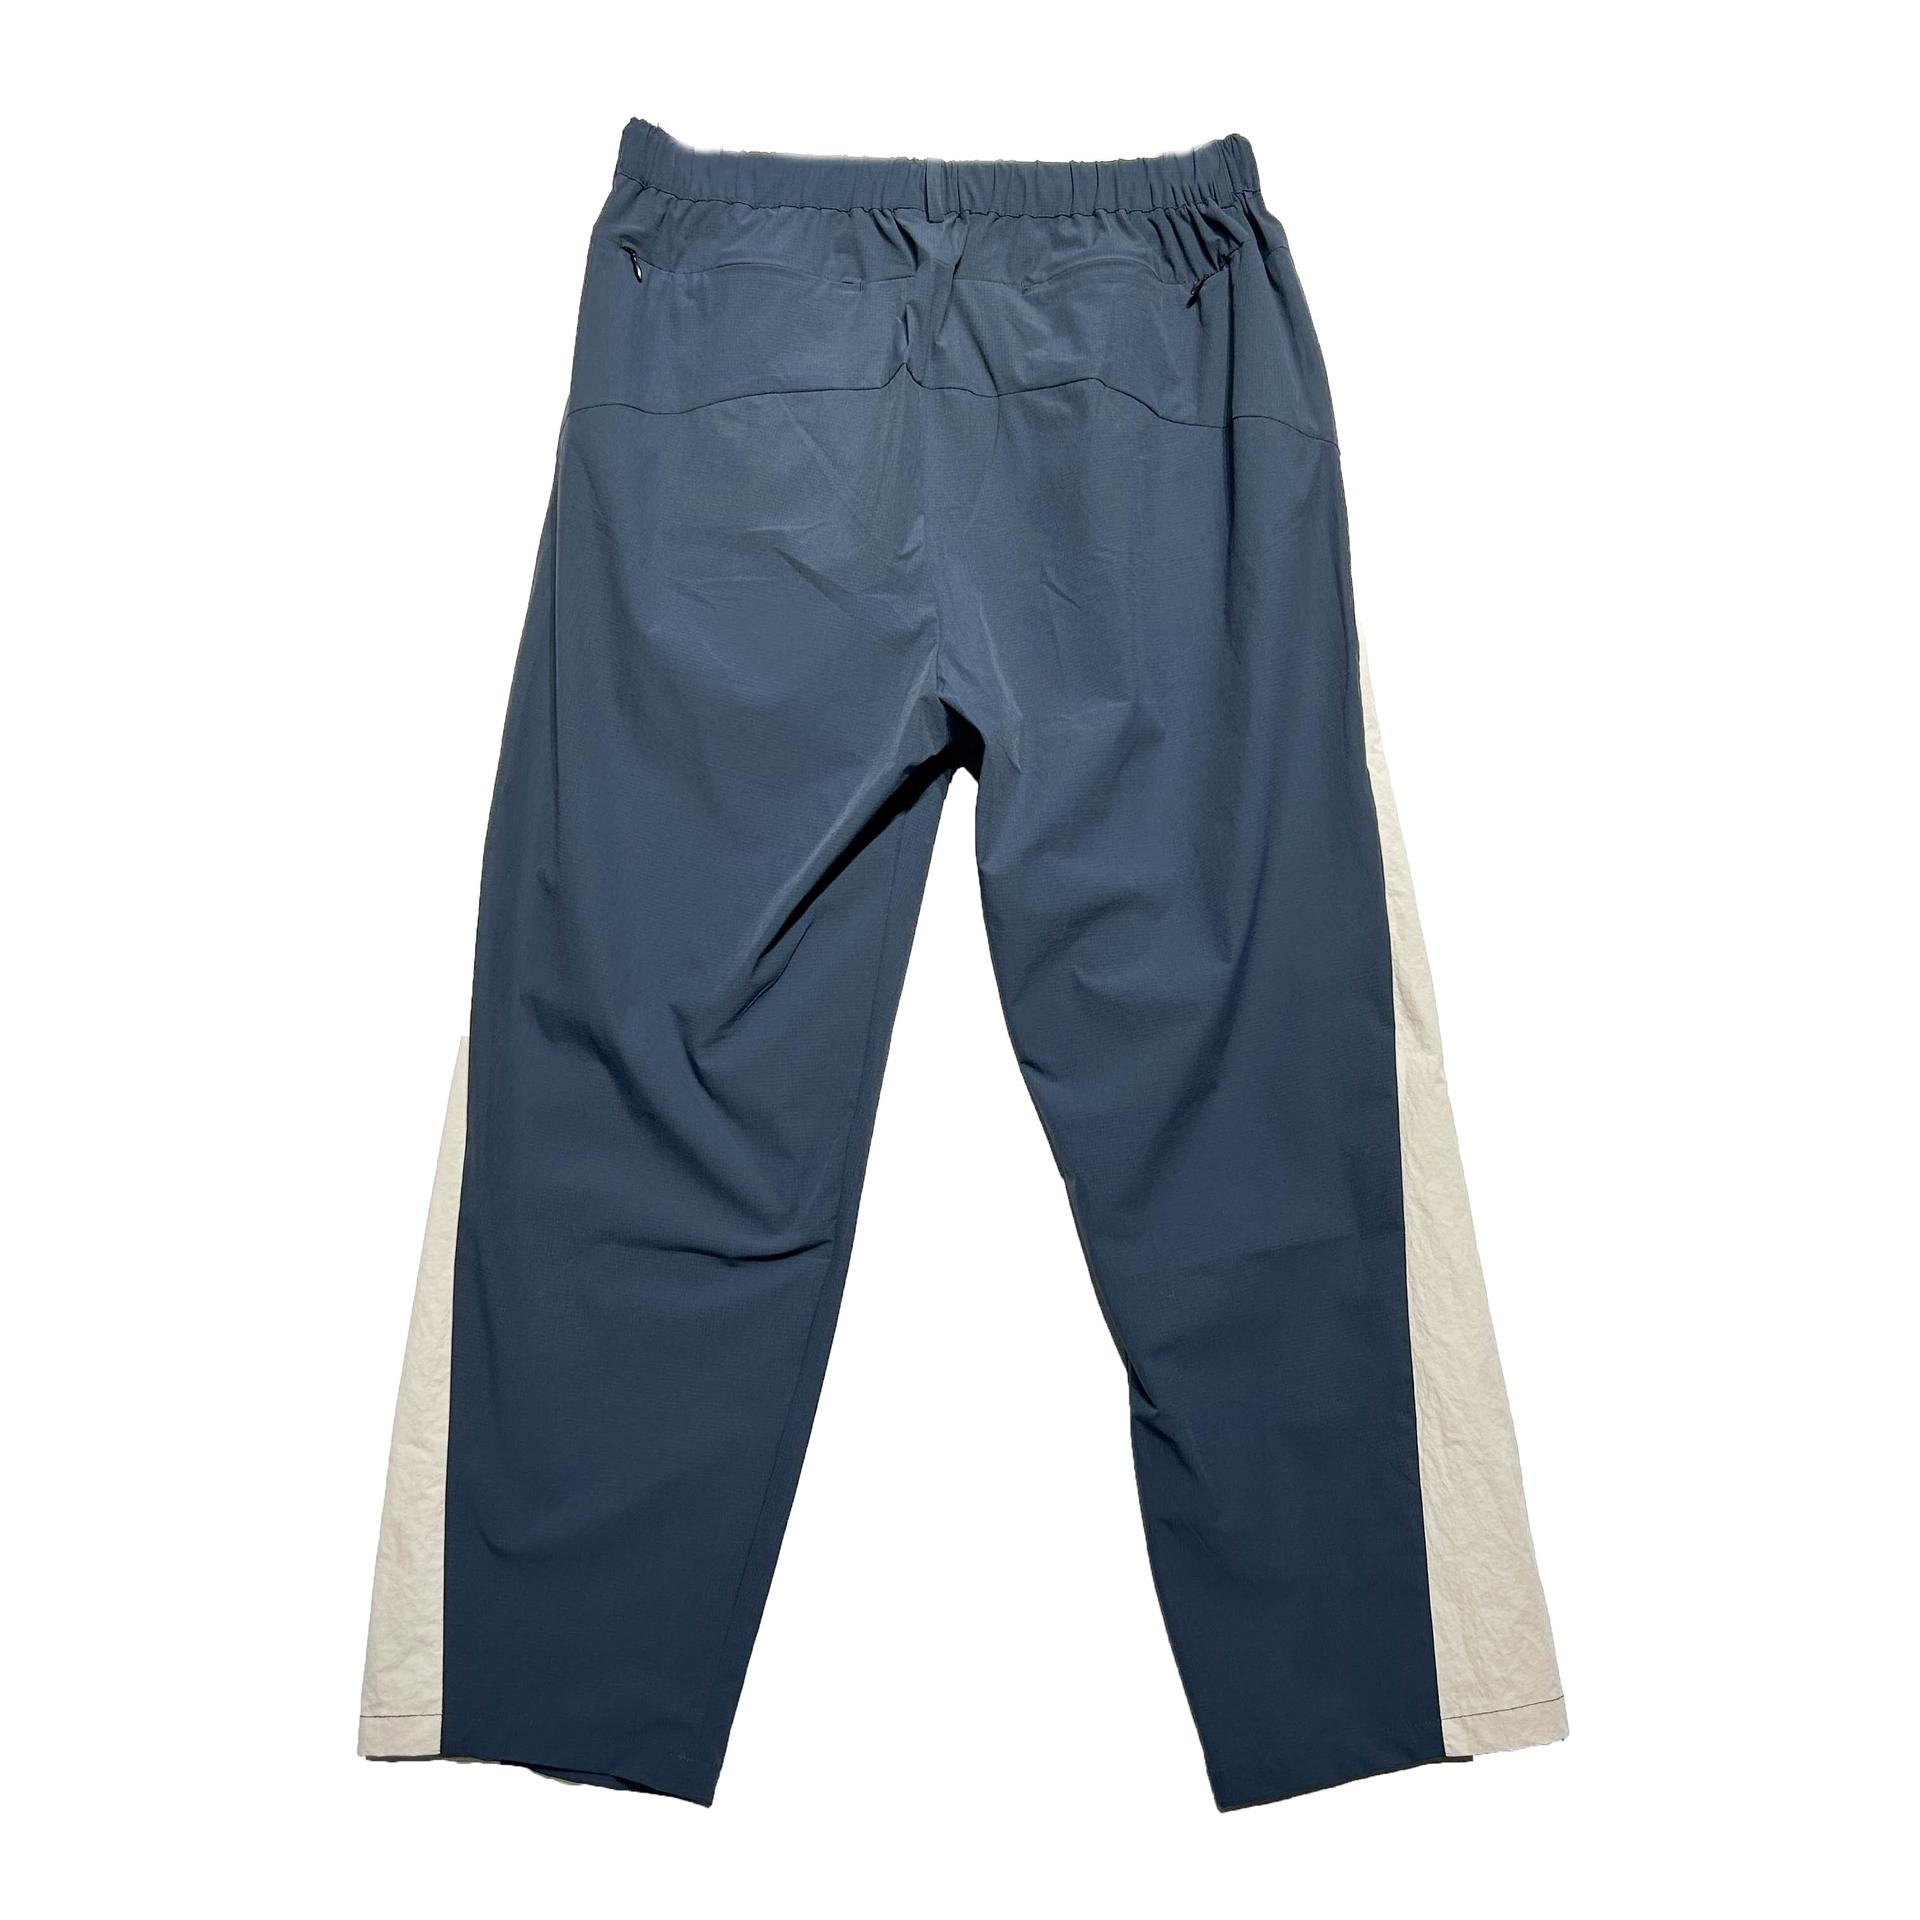 YamaGuest LP06 Unisex Breathable Trousers (BLX)